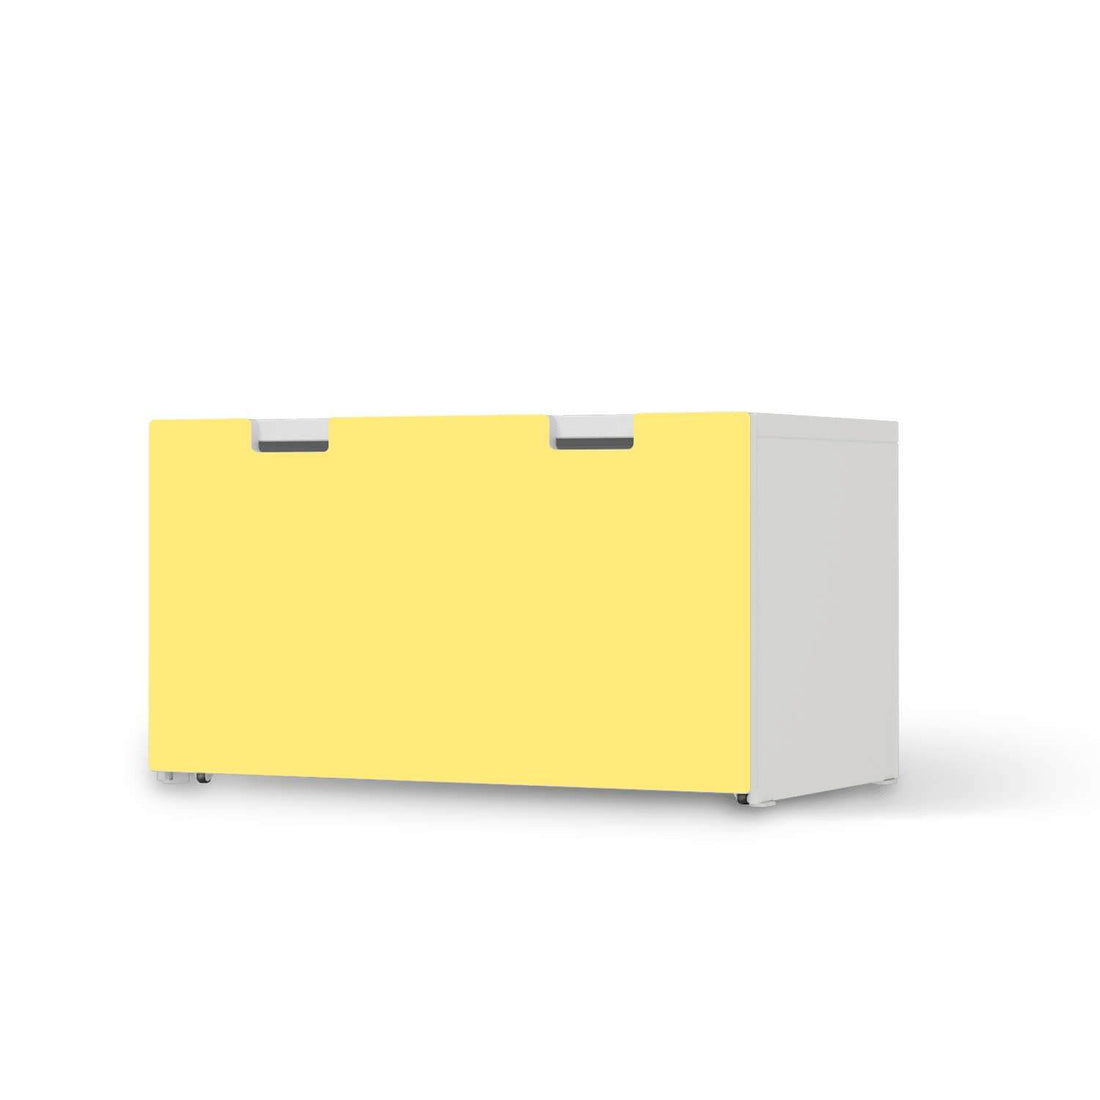 Möbelfolie Gelb Light - IKEA Stuva Banktruhe  - weiss